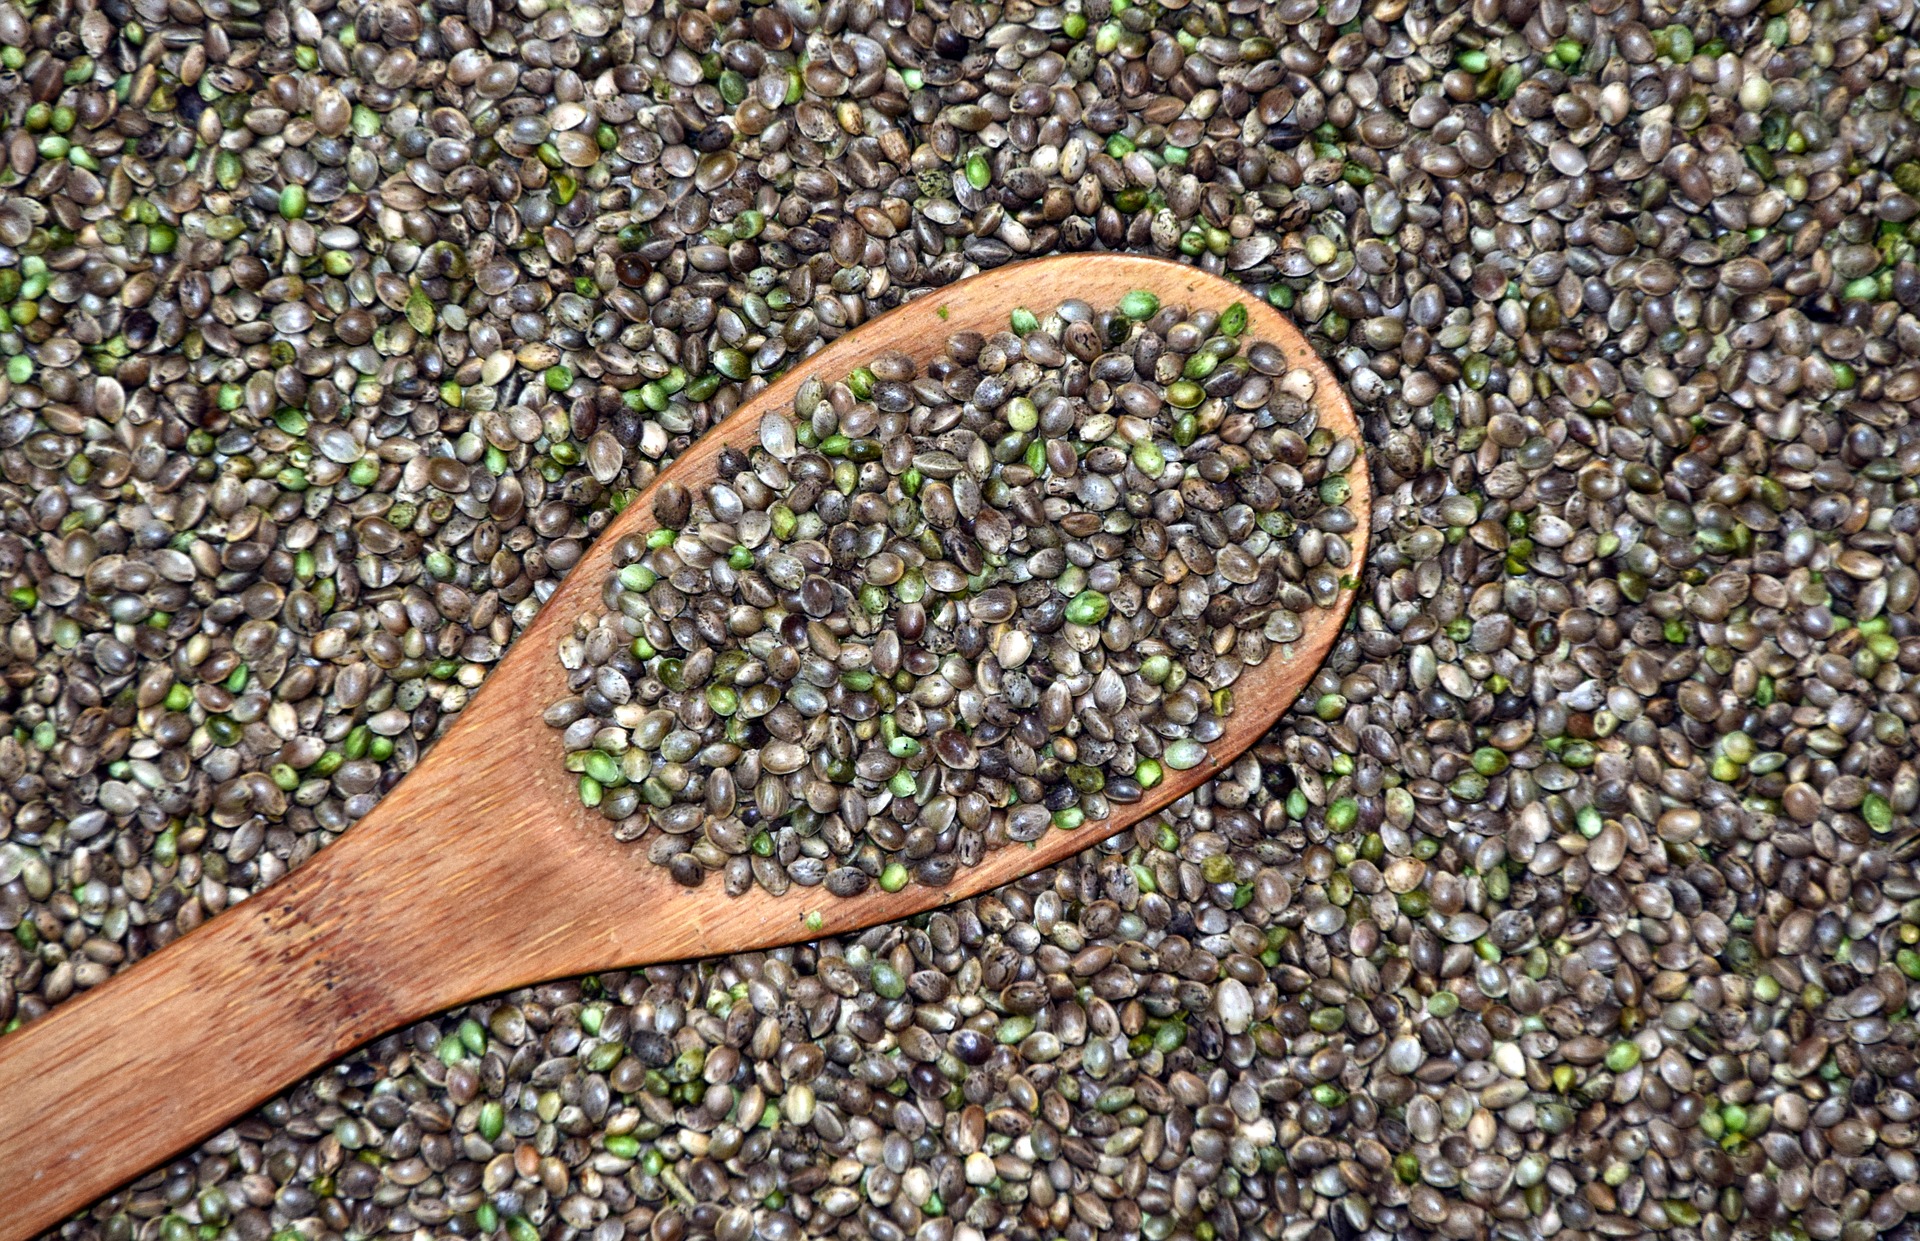 how do cannabis seeds work?